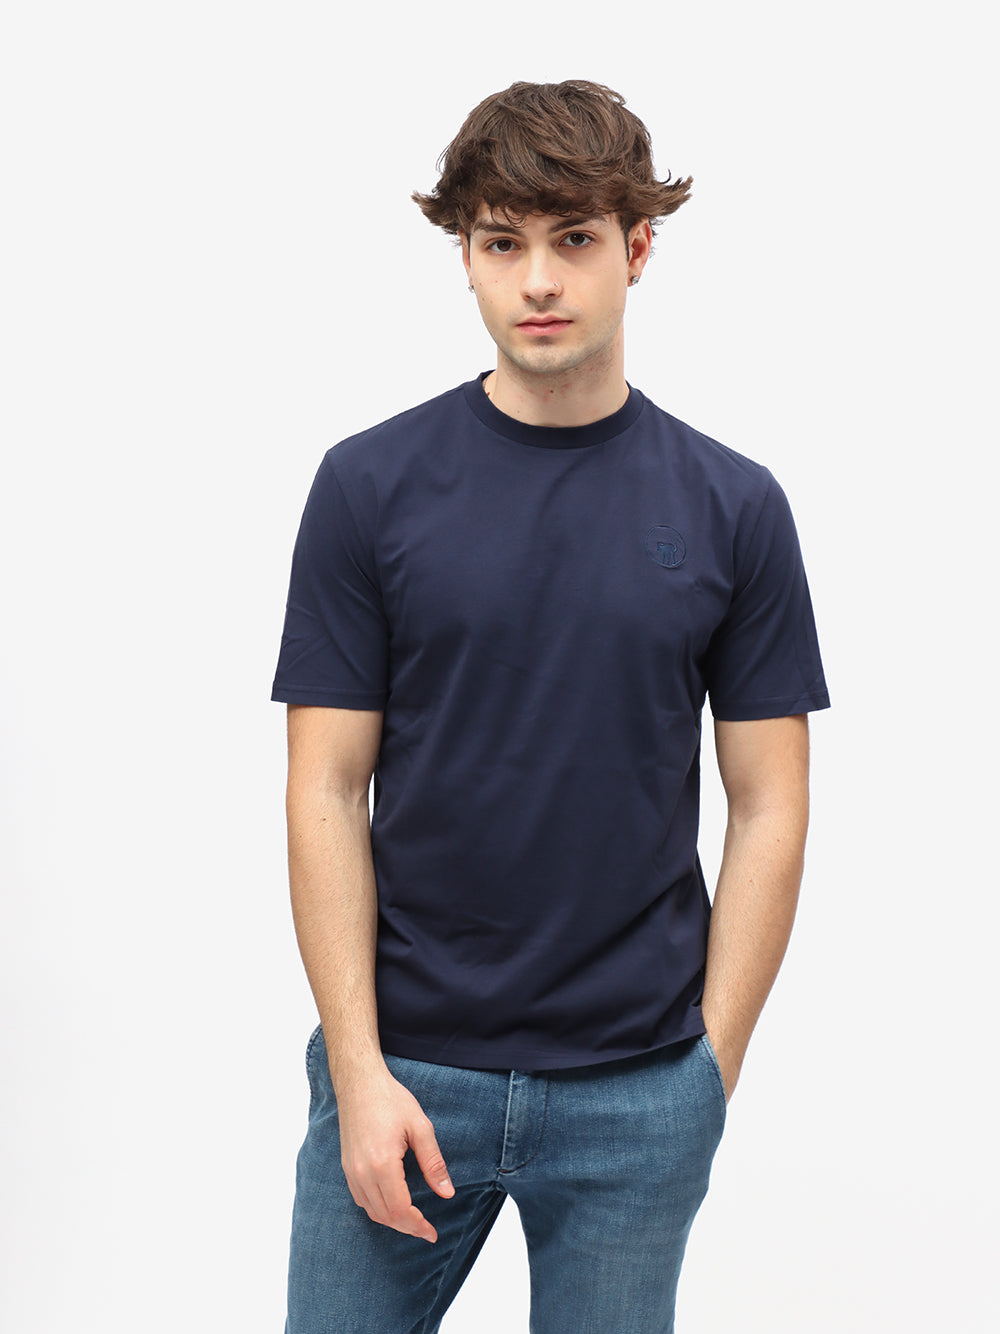 Ciesse Piumini T-Shirt Uomo Polt 2.0-Blu